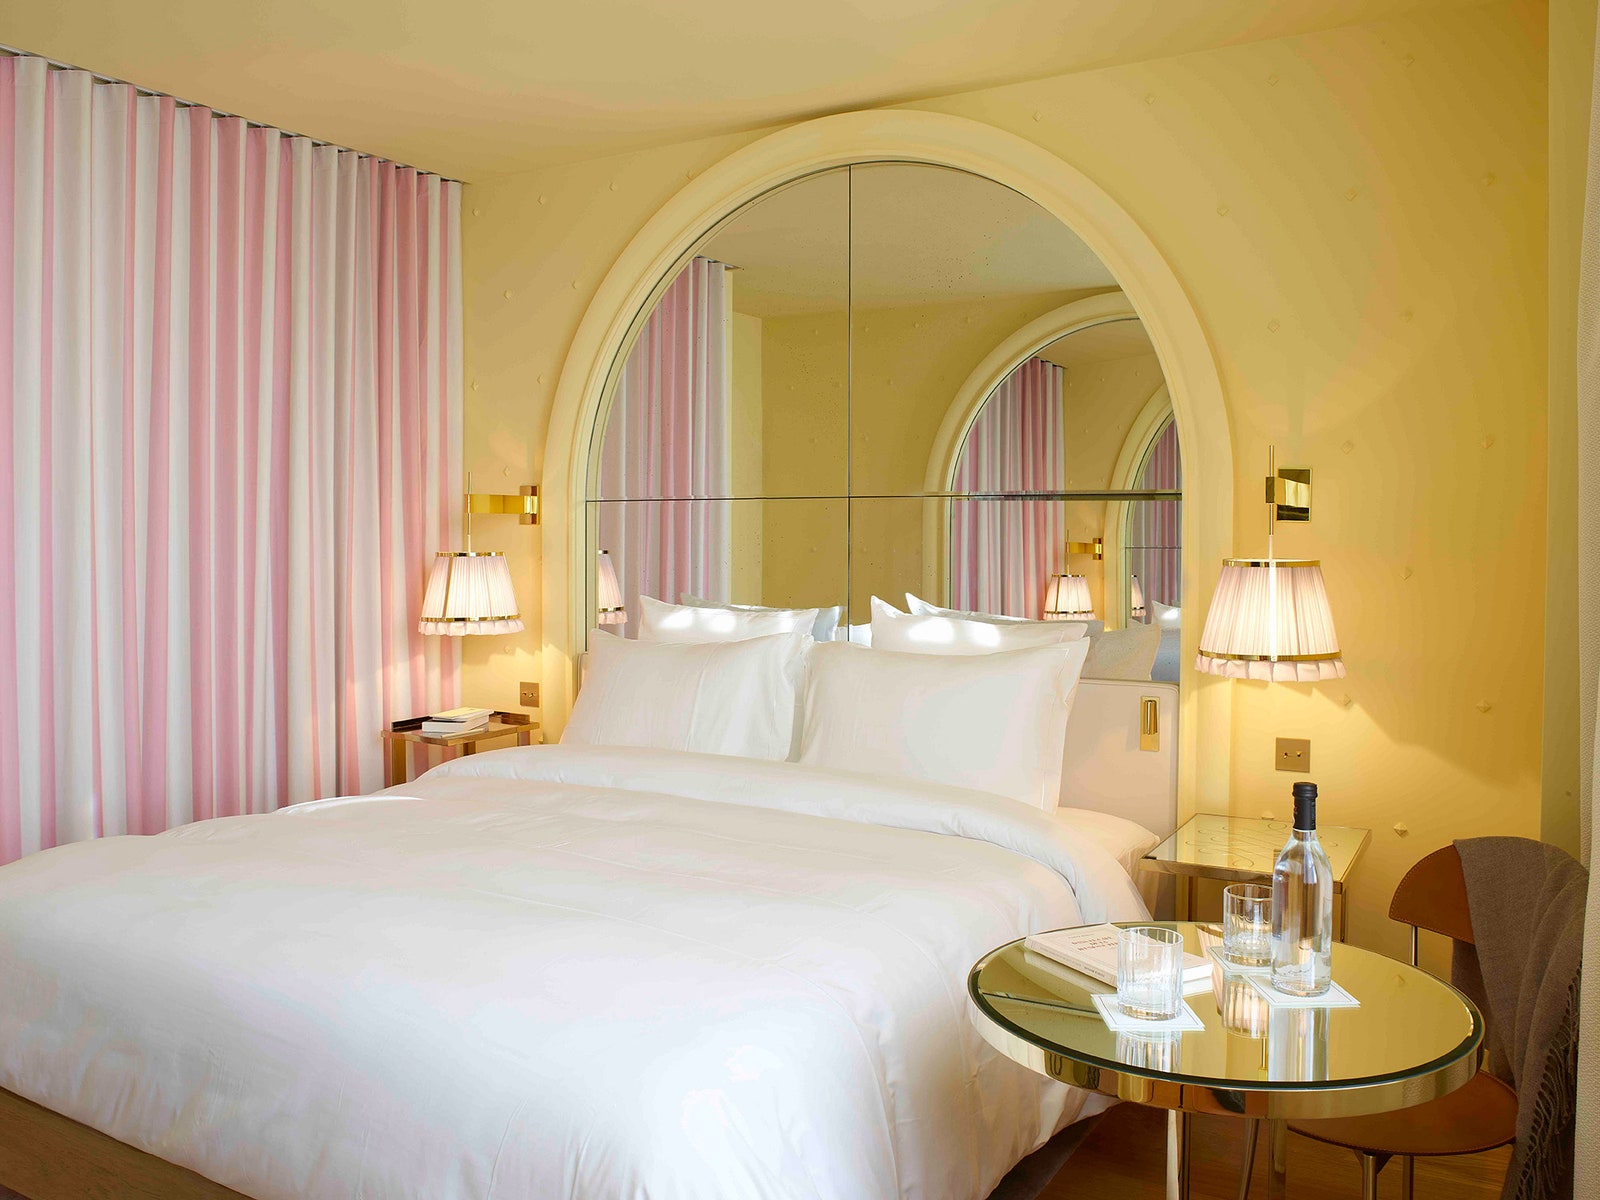 Изящный отель в Париже по дизайну Филиппа Старка